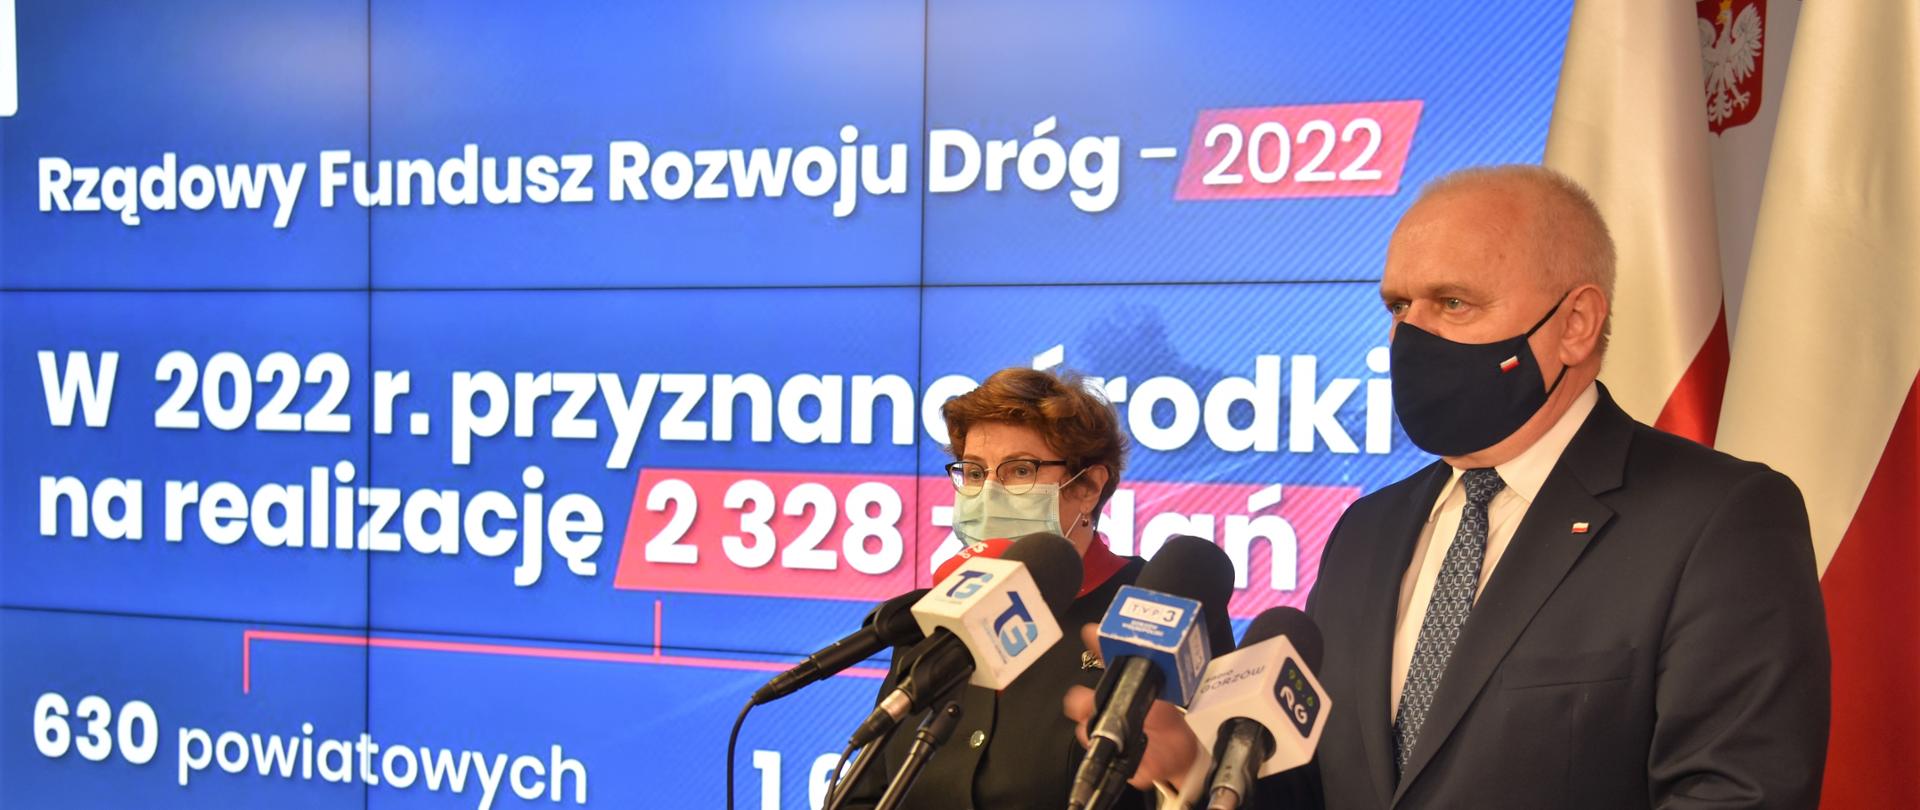 Wojewoda Lubuski przemawia w czasie konferencji. Obok poseł Elżbieta Płonka, w tle prezentacja wyników naboru programu Rządowego Funduszu Rozwoju Dróg w 2022 r